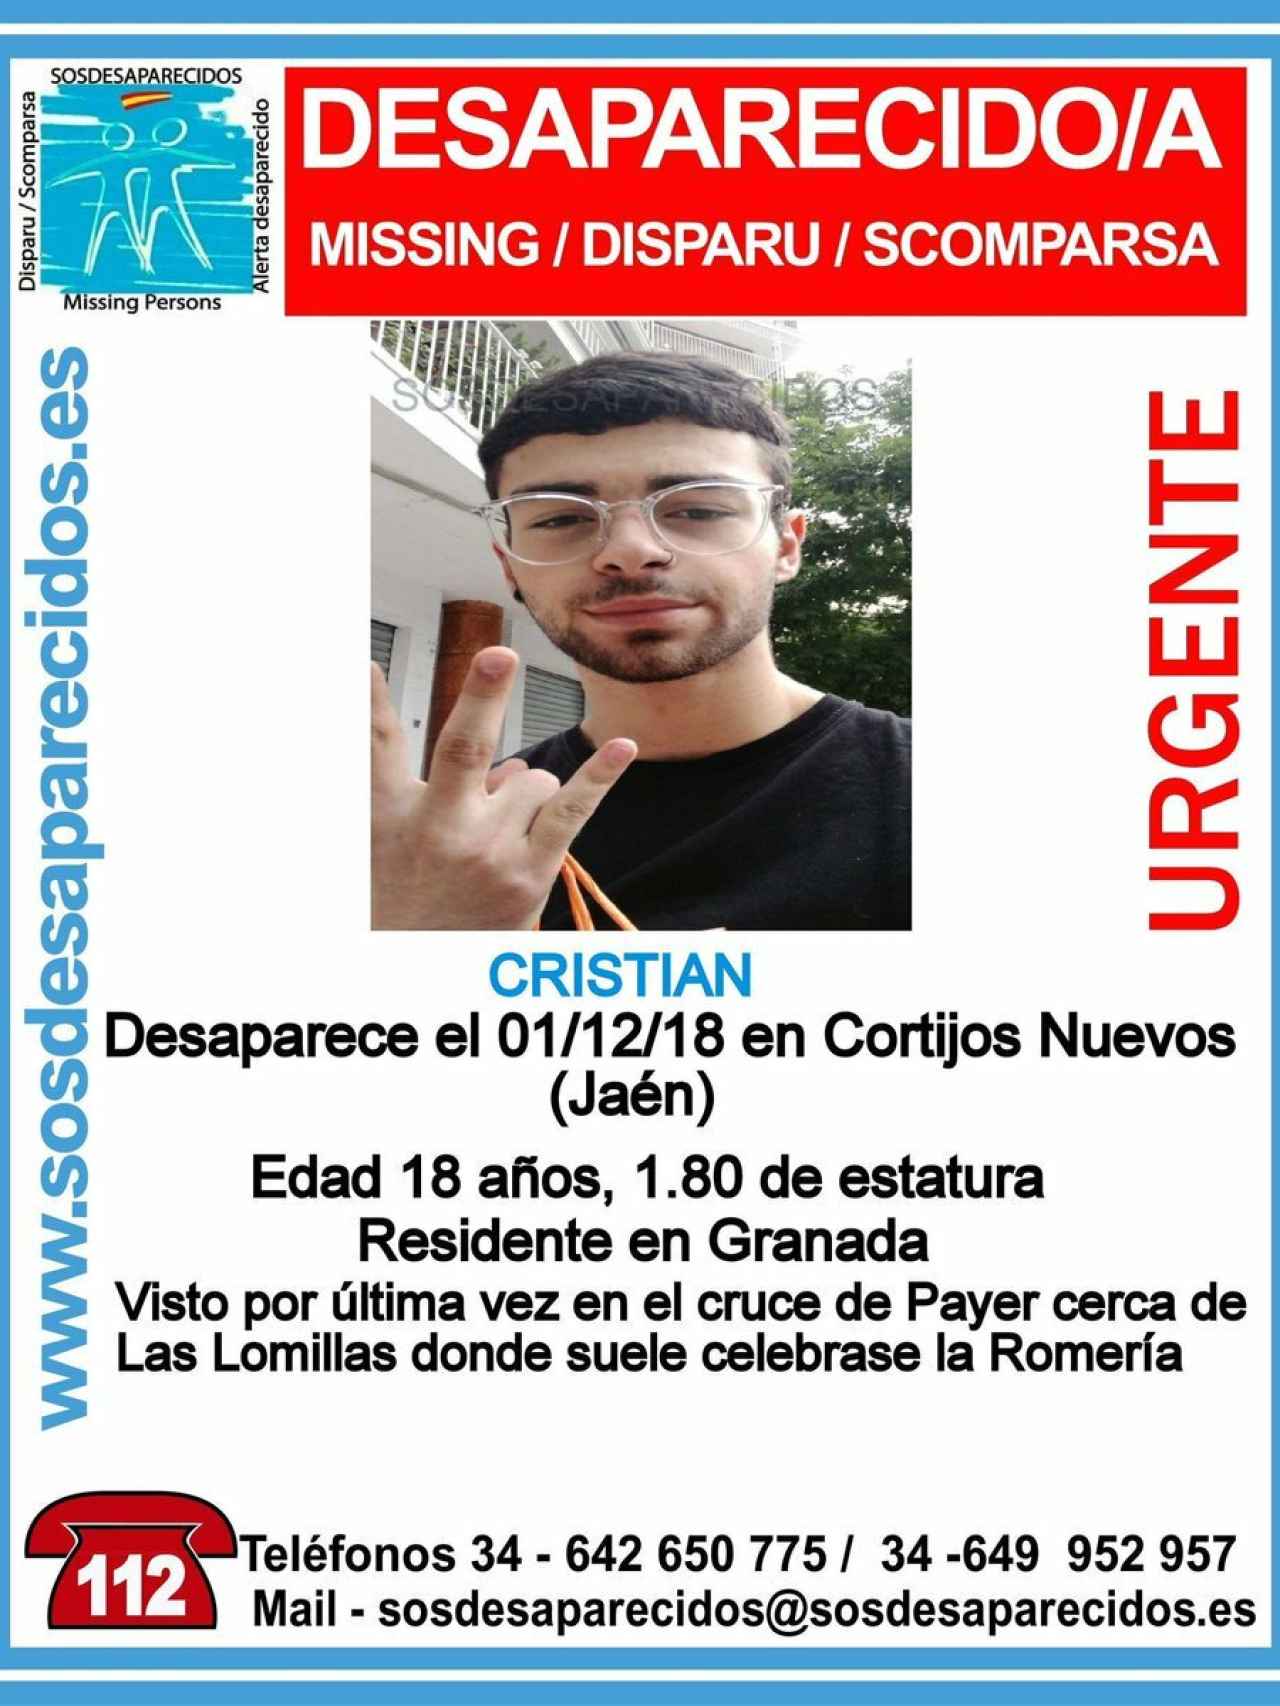 Christian Foronda desapareció el pasado 30 de noviembre en Jaén.